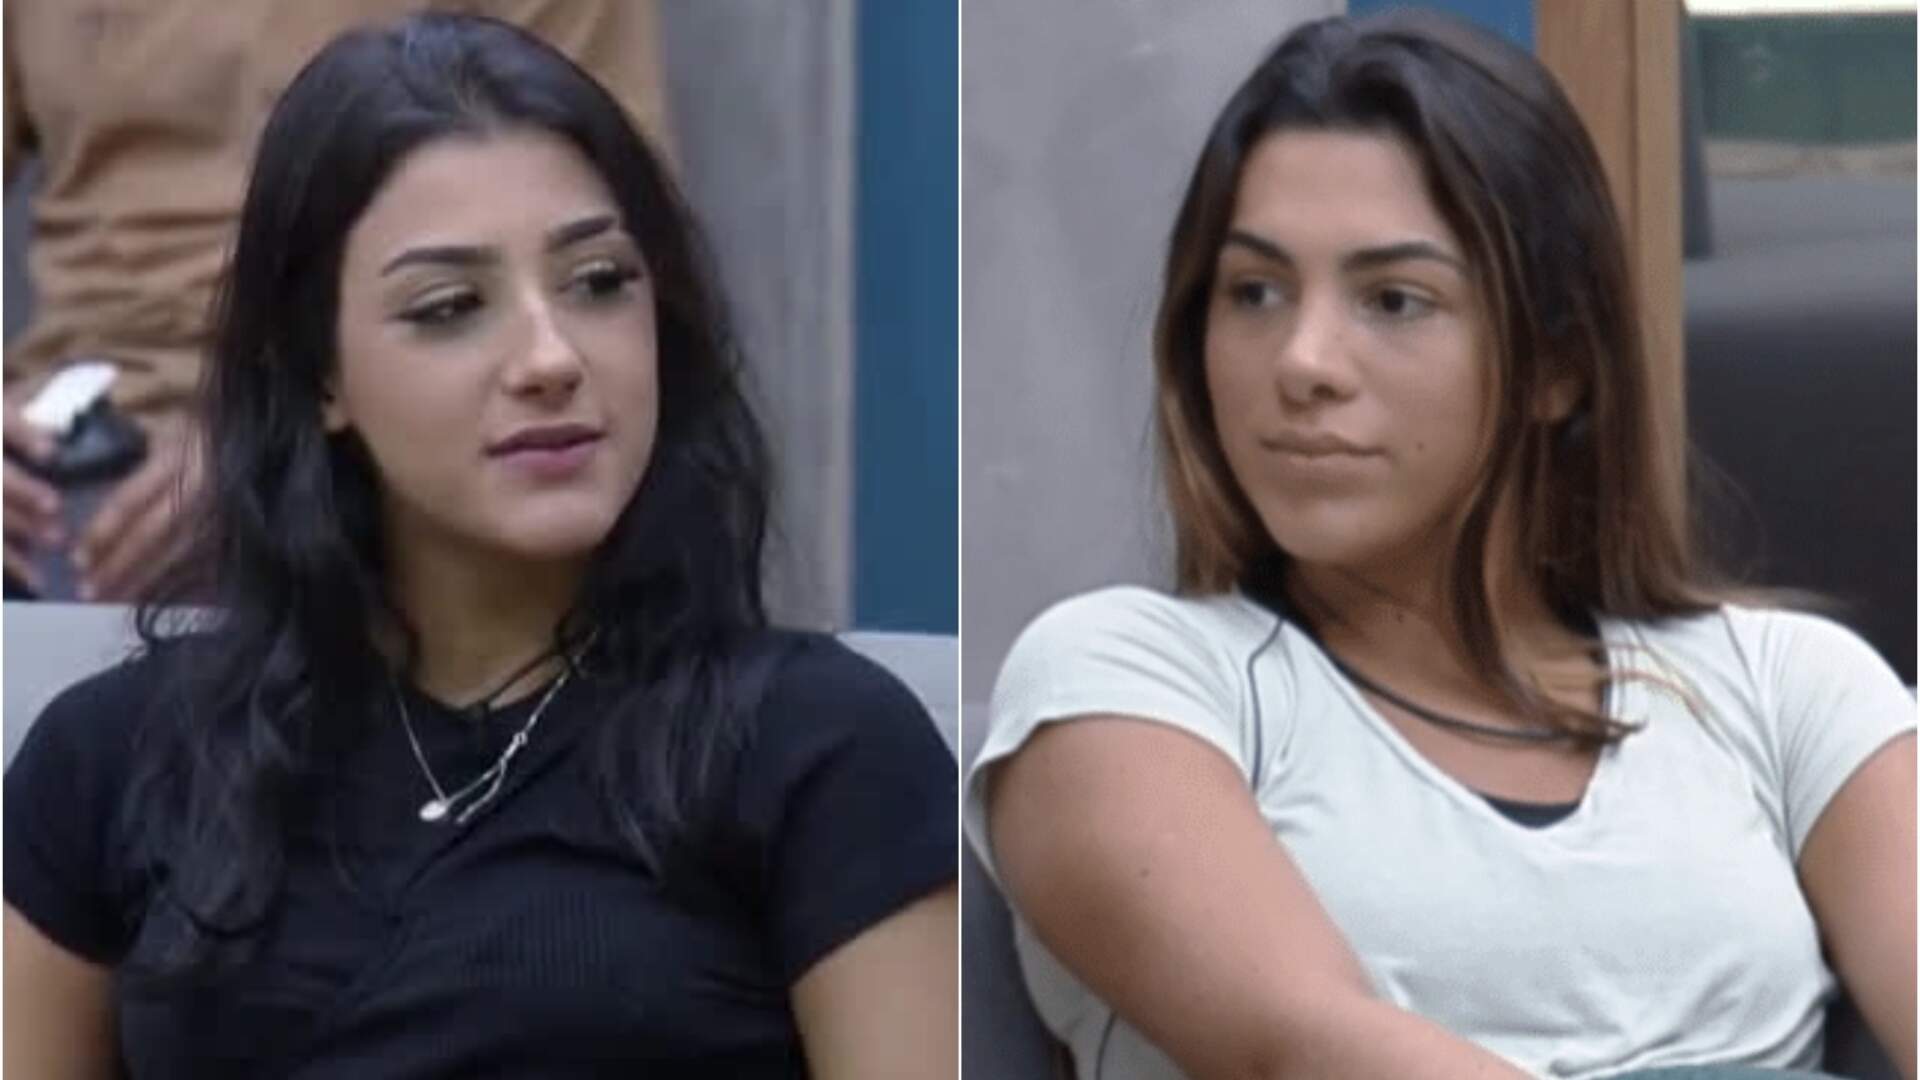 A Fazenda 14: Bia Miranda e Pétala Barreiros detonam Deolane Bezerra e colocam amizade em prova - Metropolitana FM